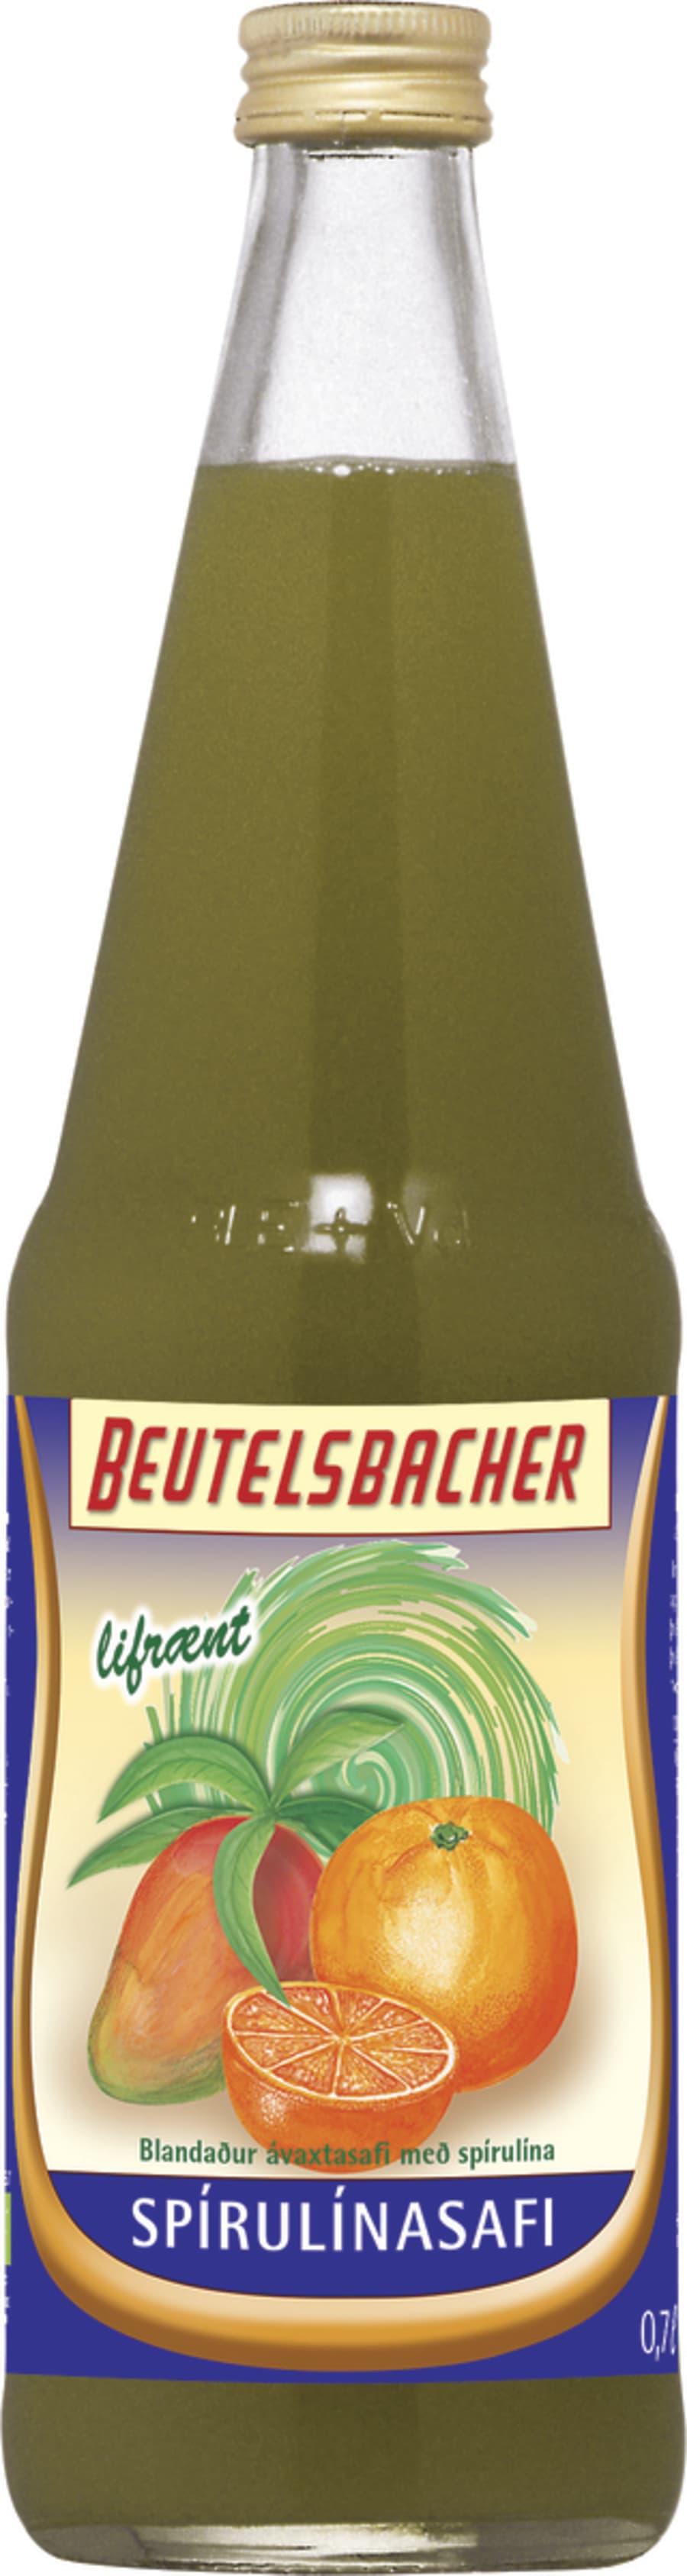 Beutelsbacher Spírulína Safi